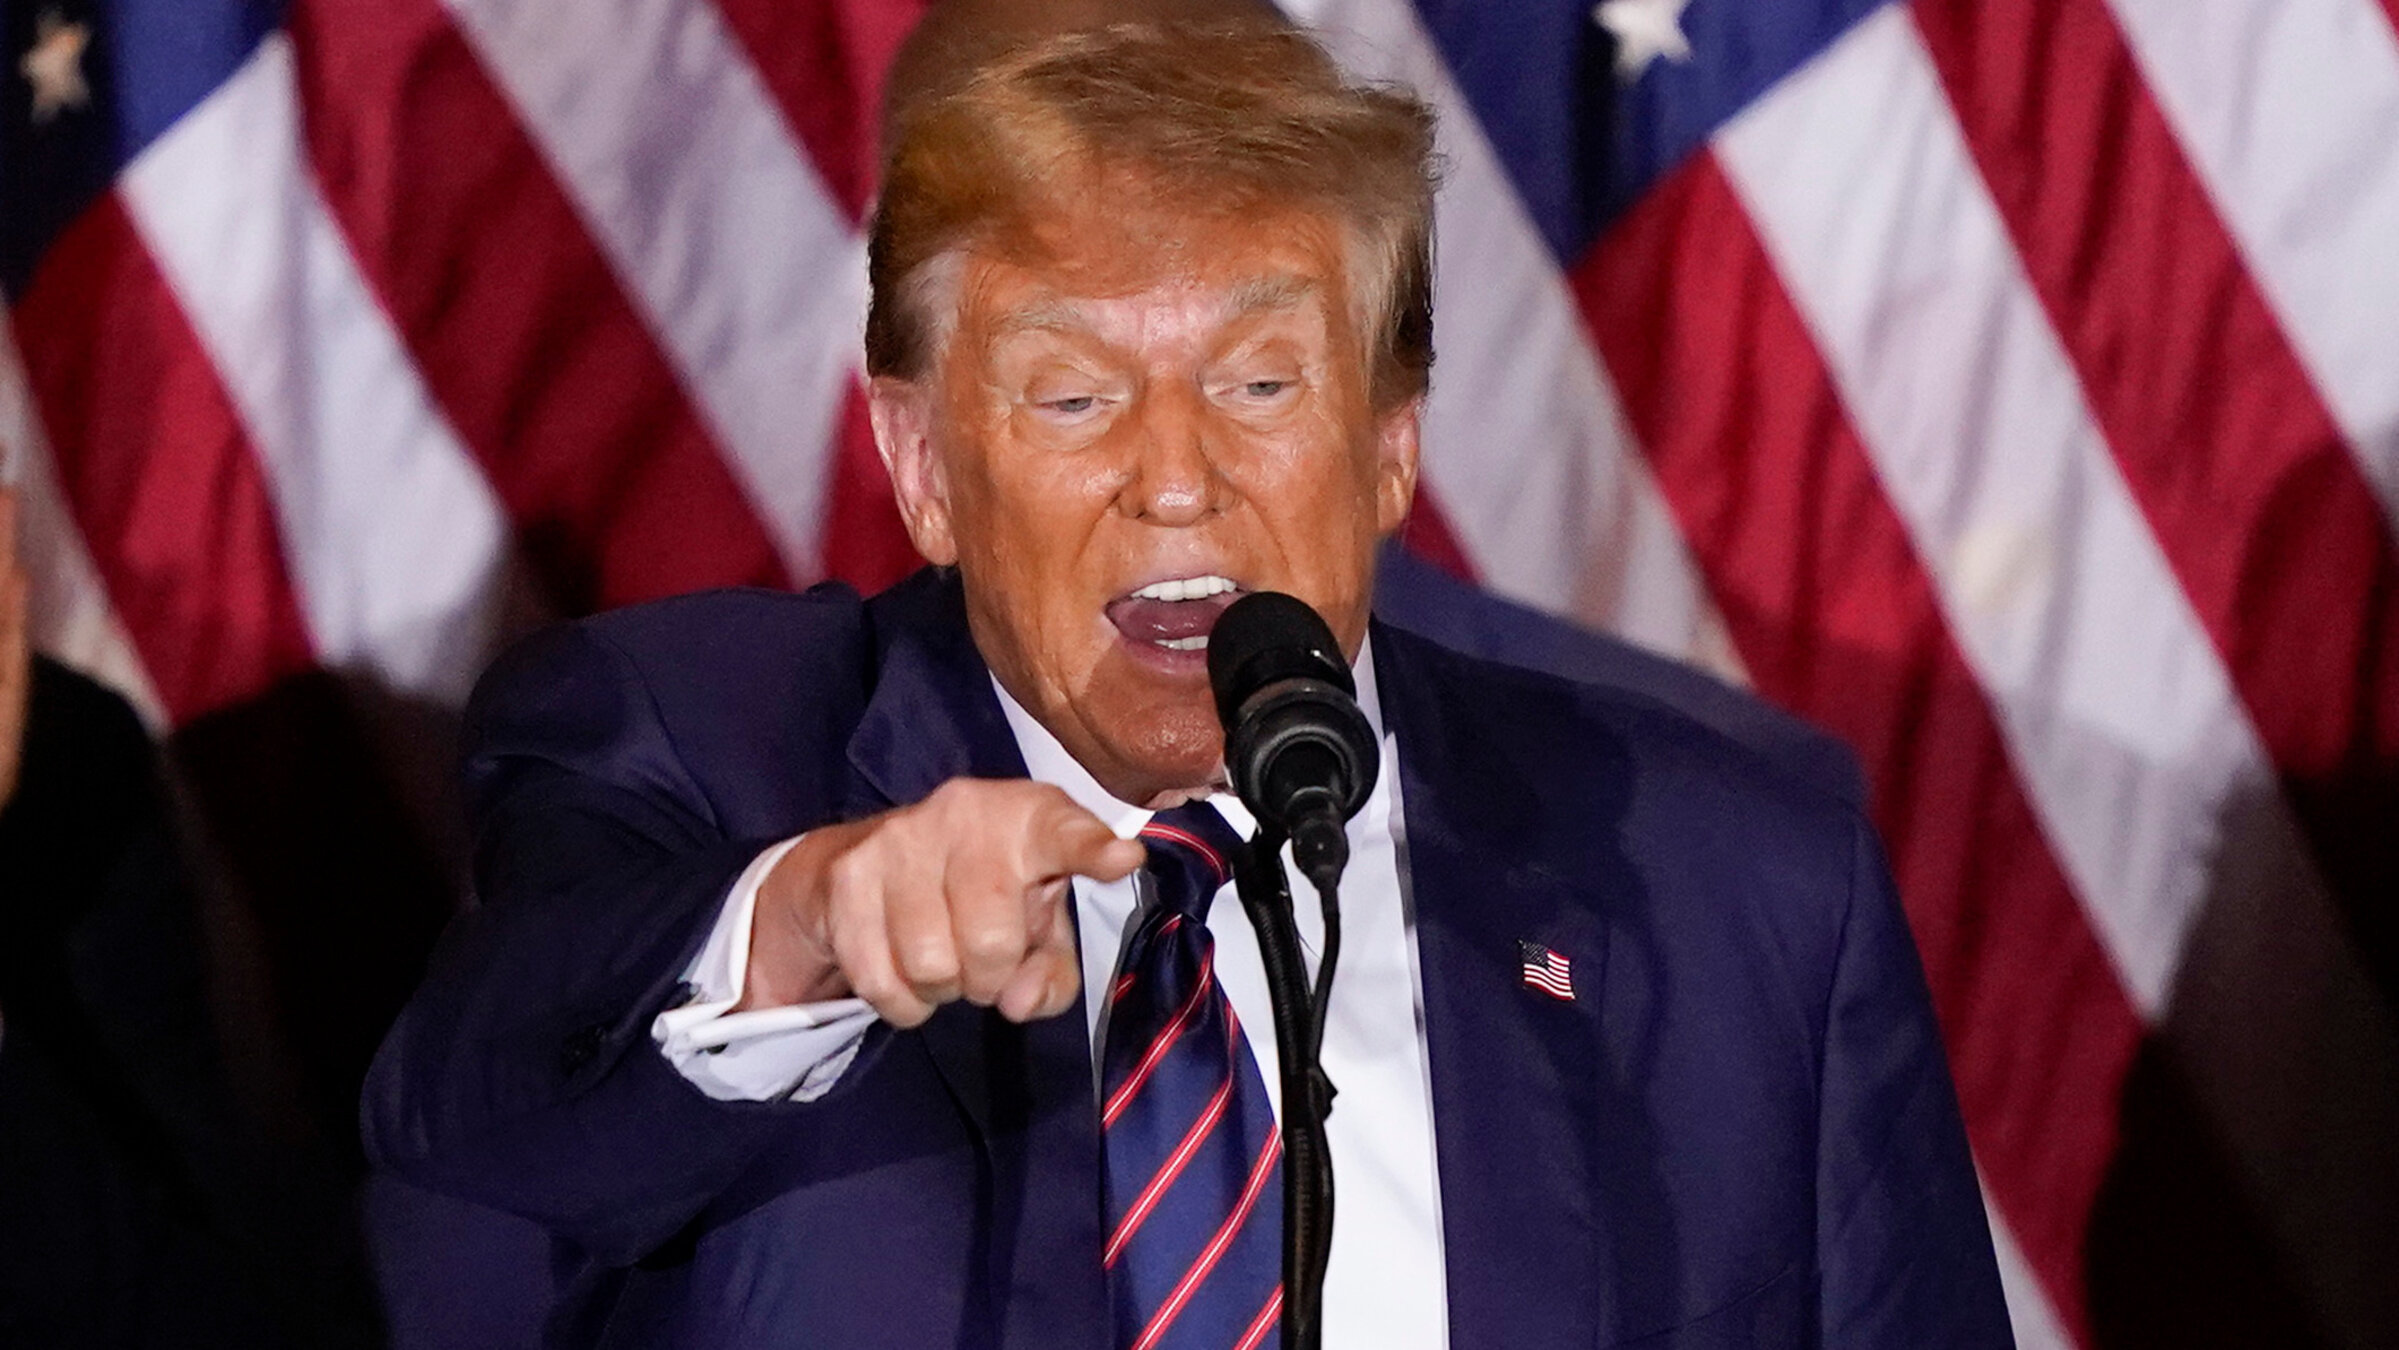 "Trump - der wütende Kandidat": Donald Trump steht bei einer Rede vor einer Flagge der USA. Er zeigt mit wütendem Gesichtsausdruck ins Publikum.